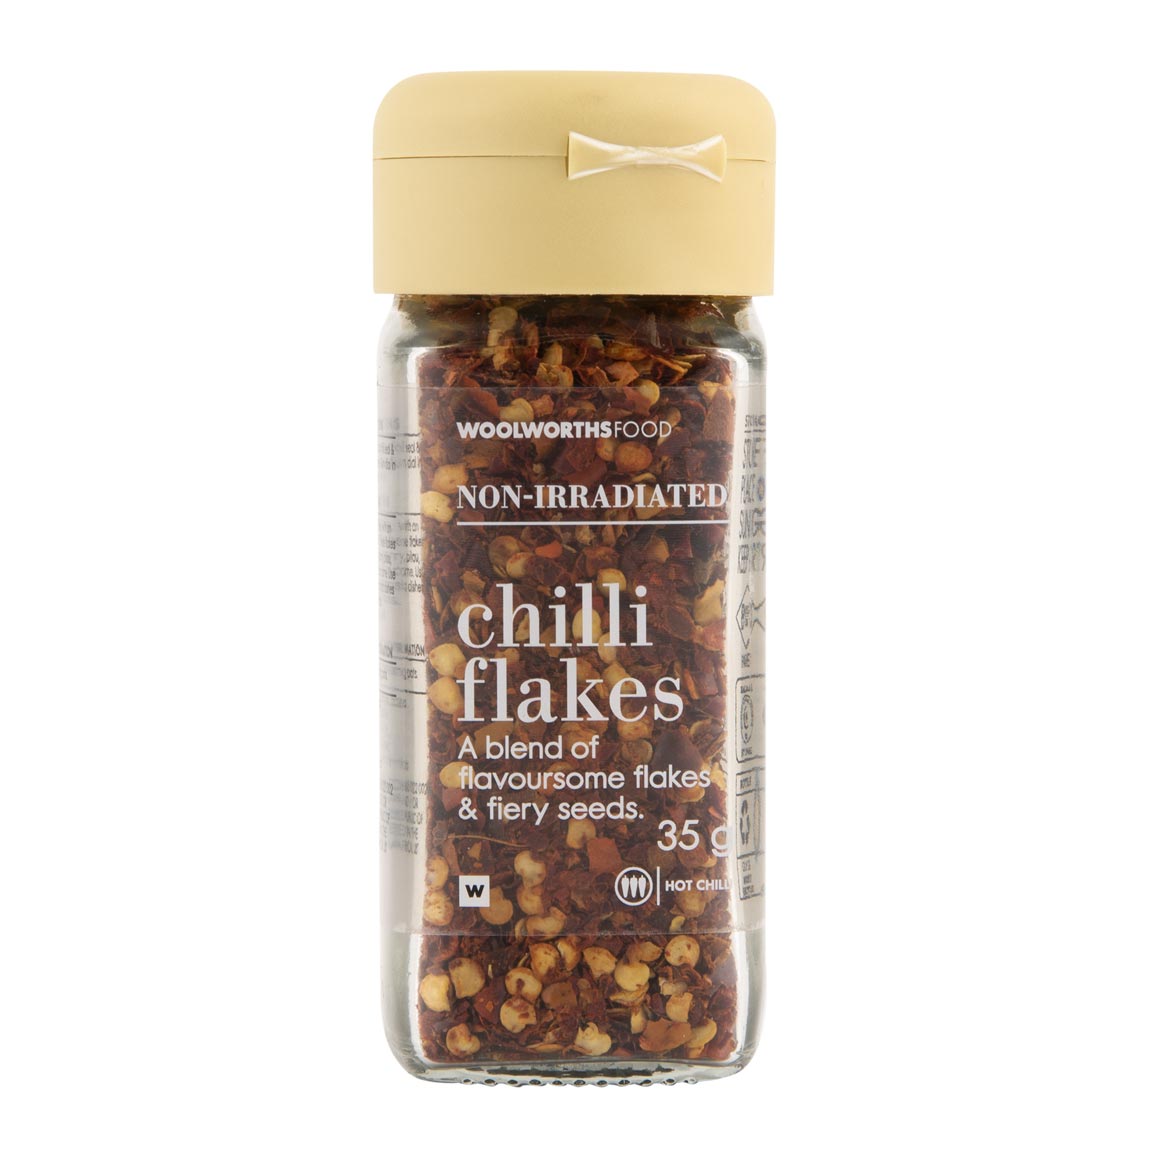 Chili flakes